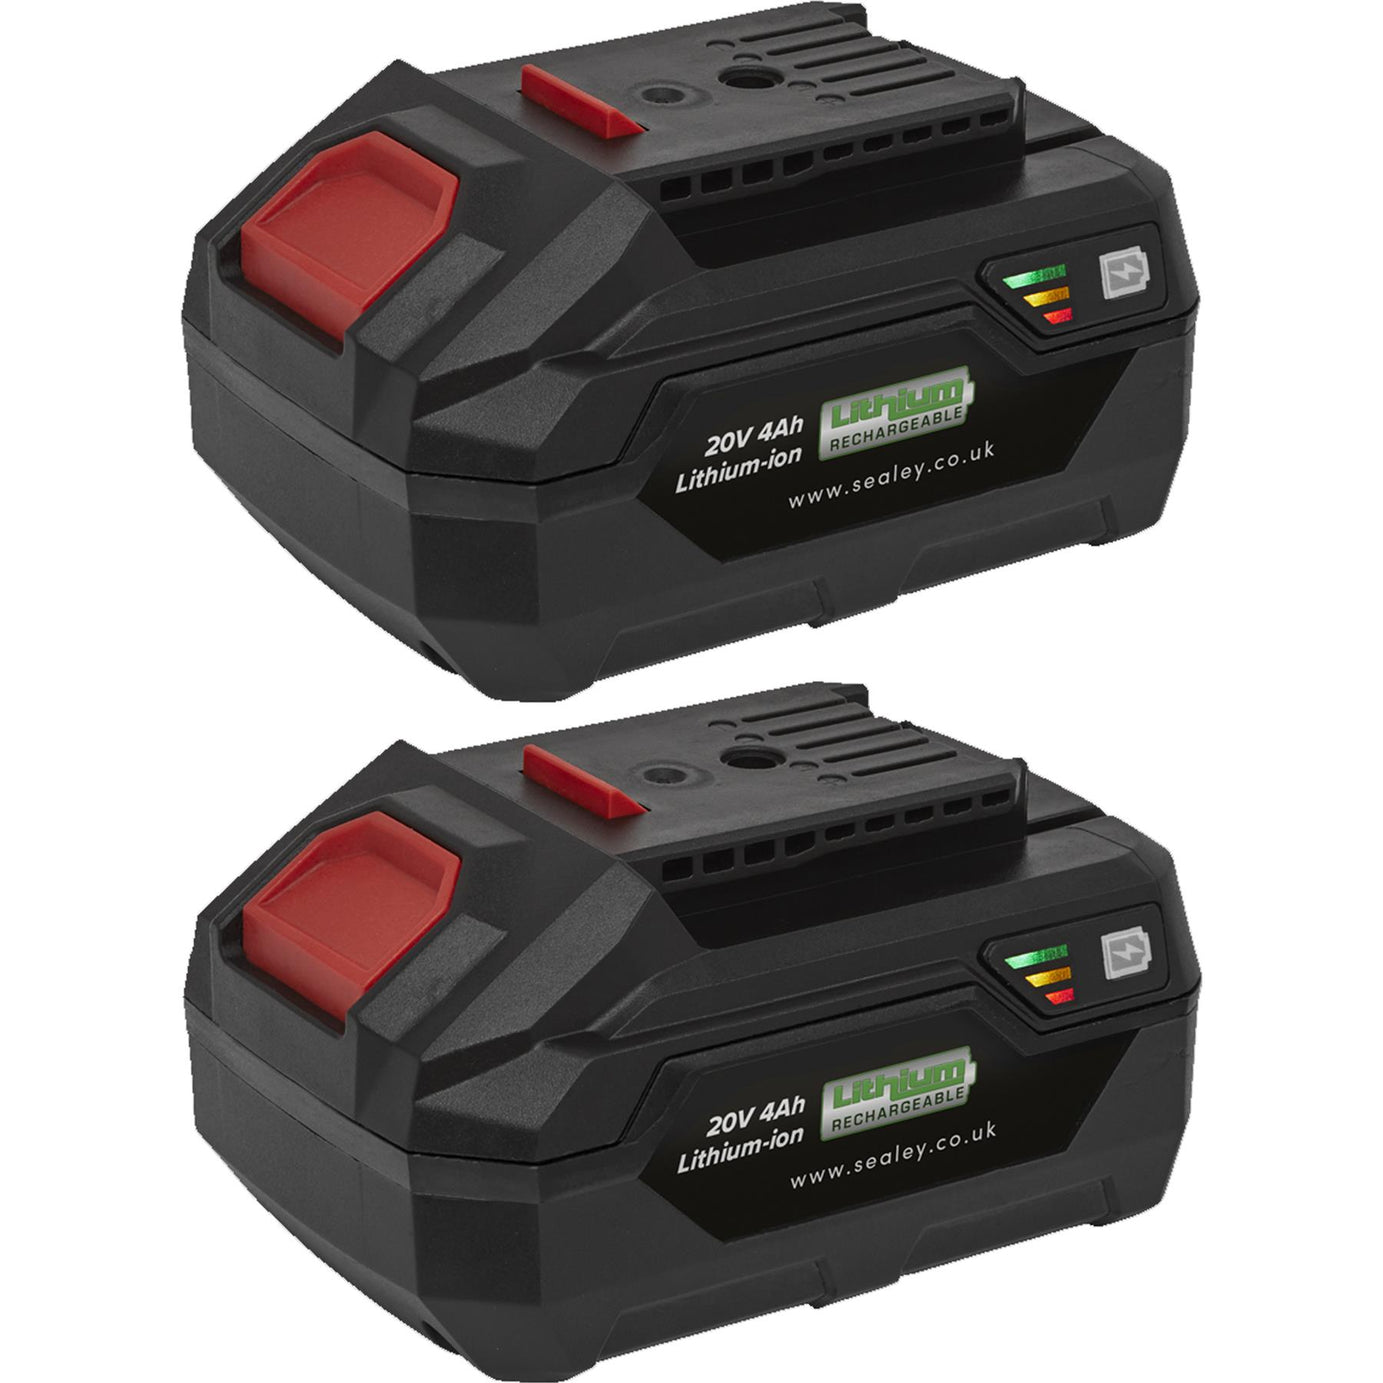 Sealey Power Tool Battery Pack 20V 4Ah Kit for SV20 Series